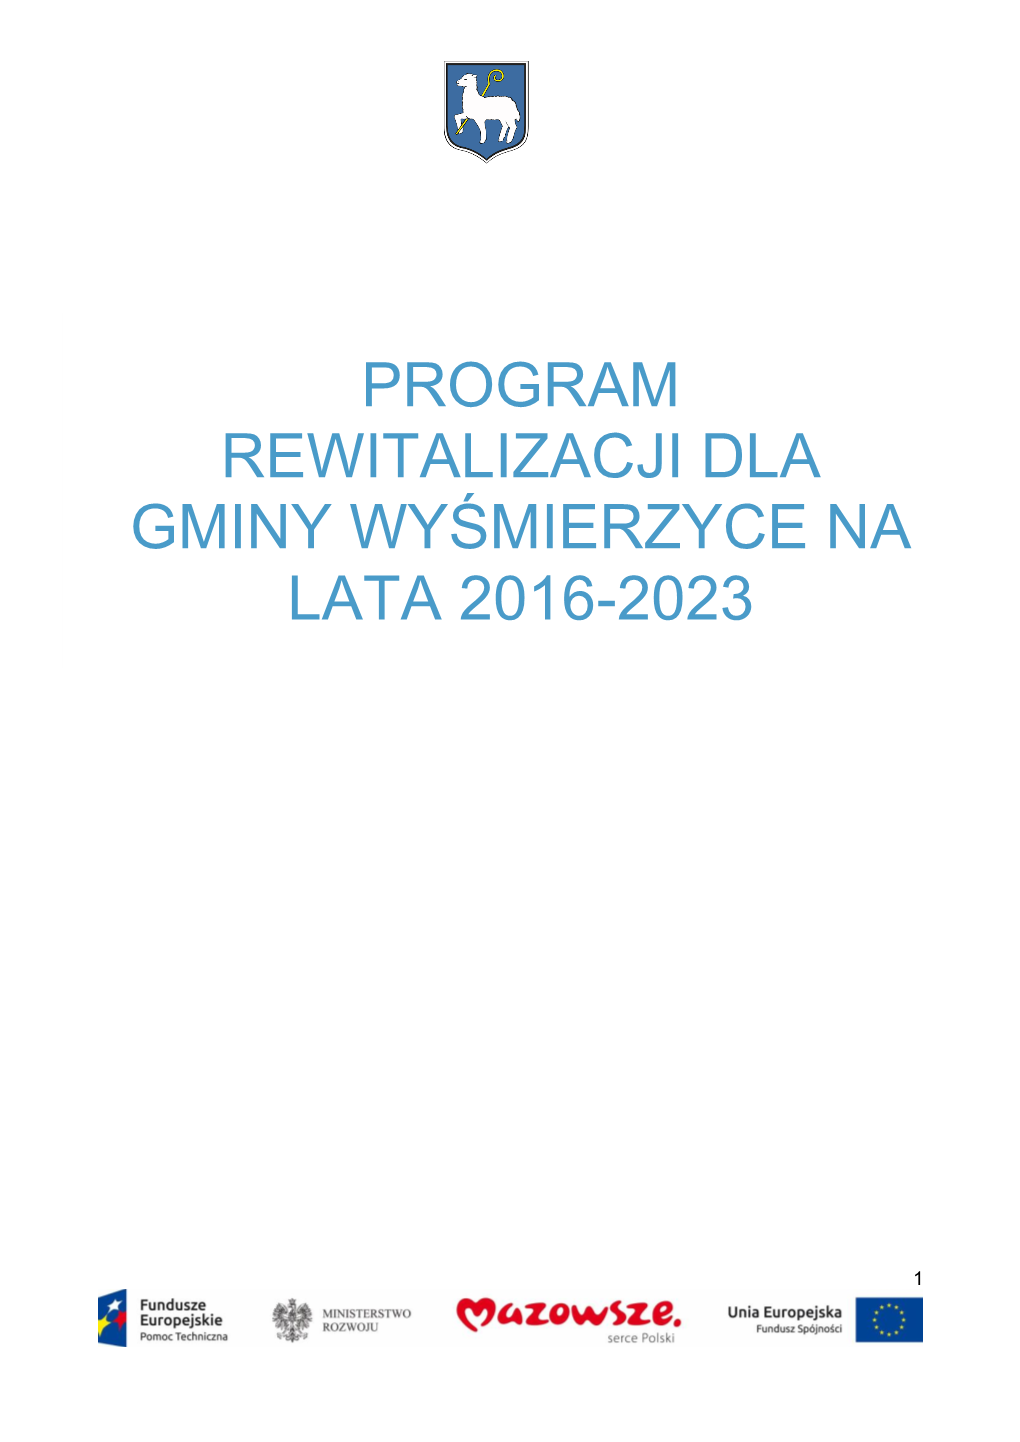 Program Rewitalizacji Dla Gminy Wyśmierzyce Na Lata 2016-2023